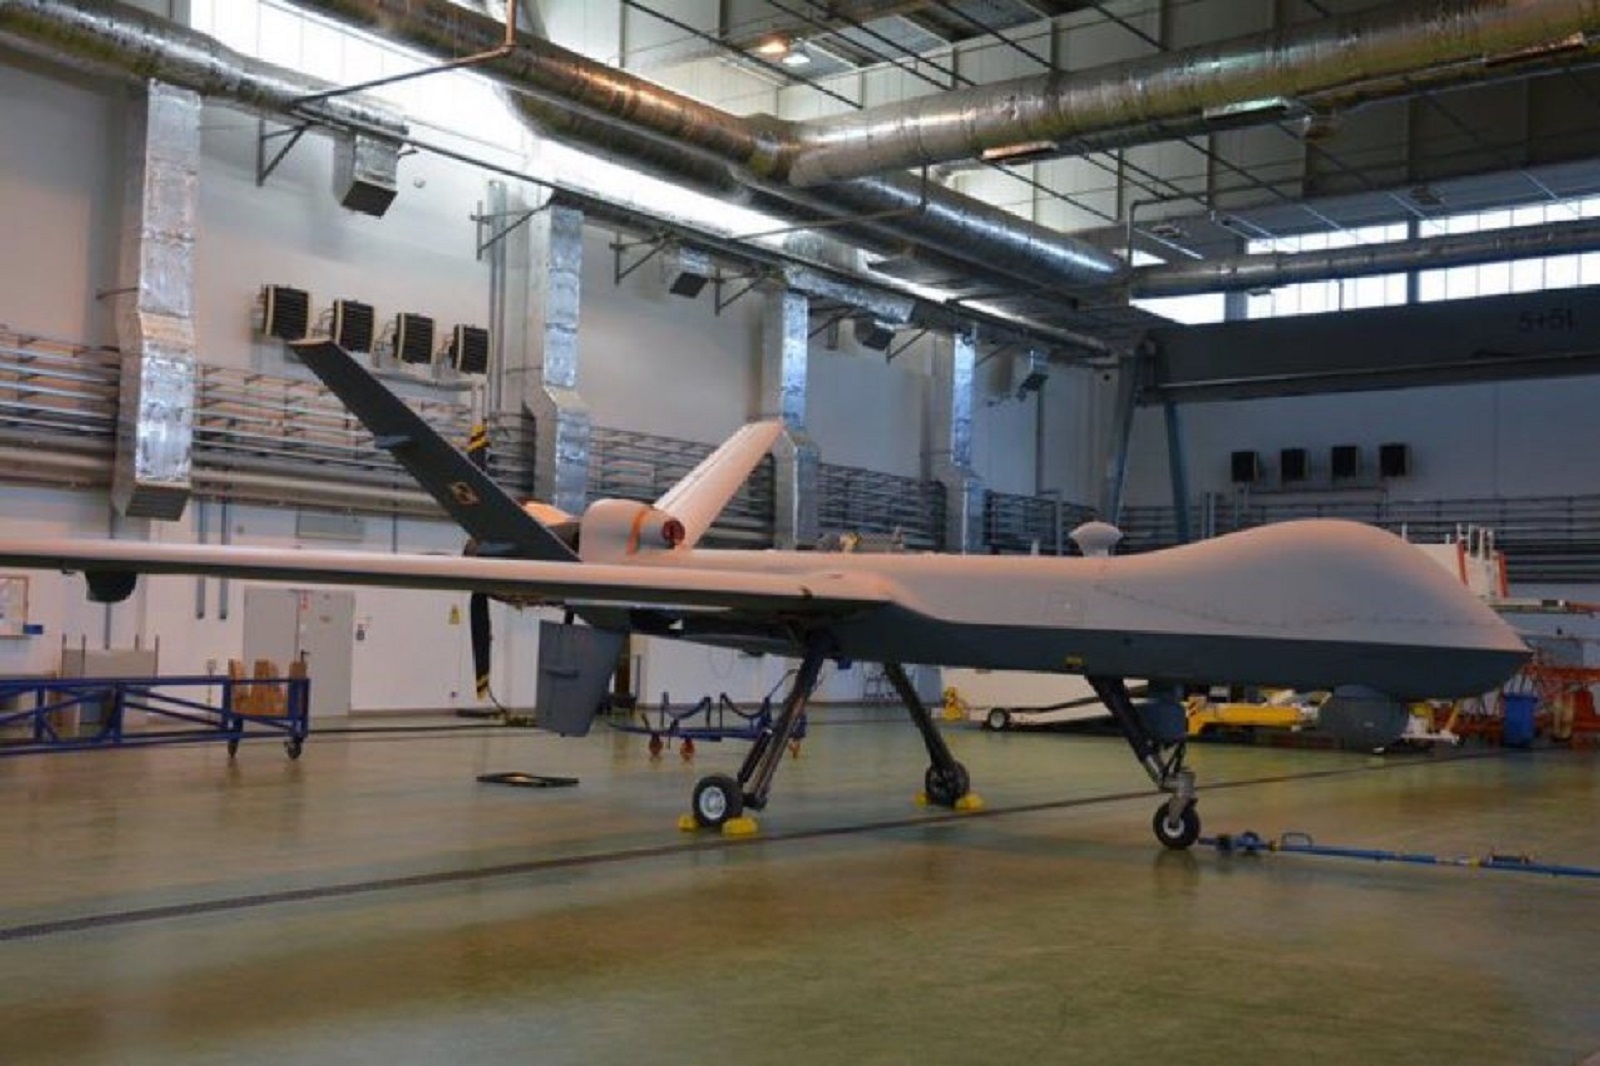 awaryjne lądowanie drona sił powietrznych usa w okolicach mirosławca. jest komunikat